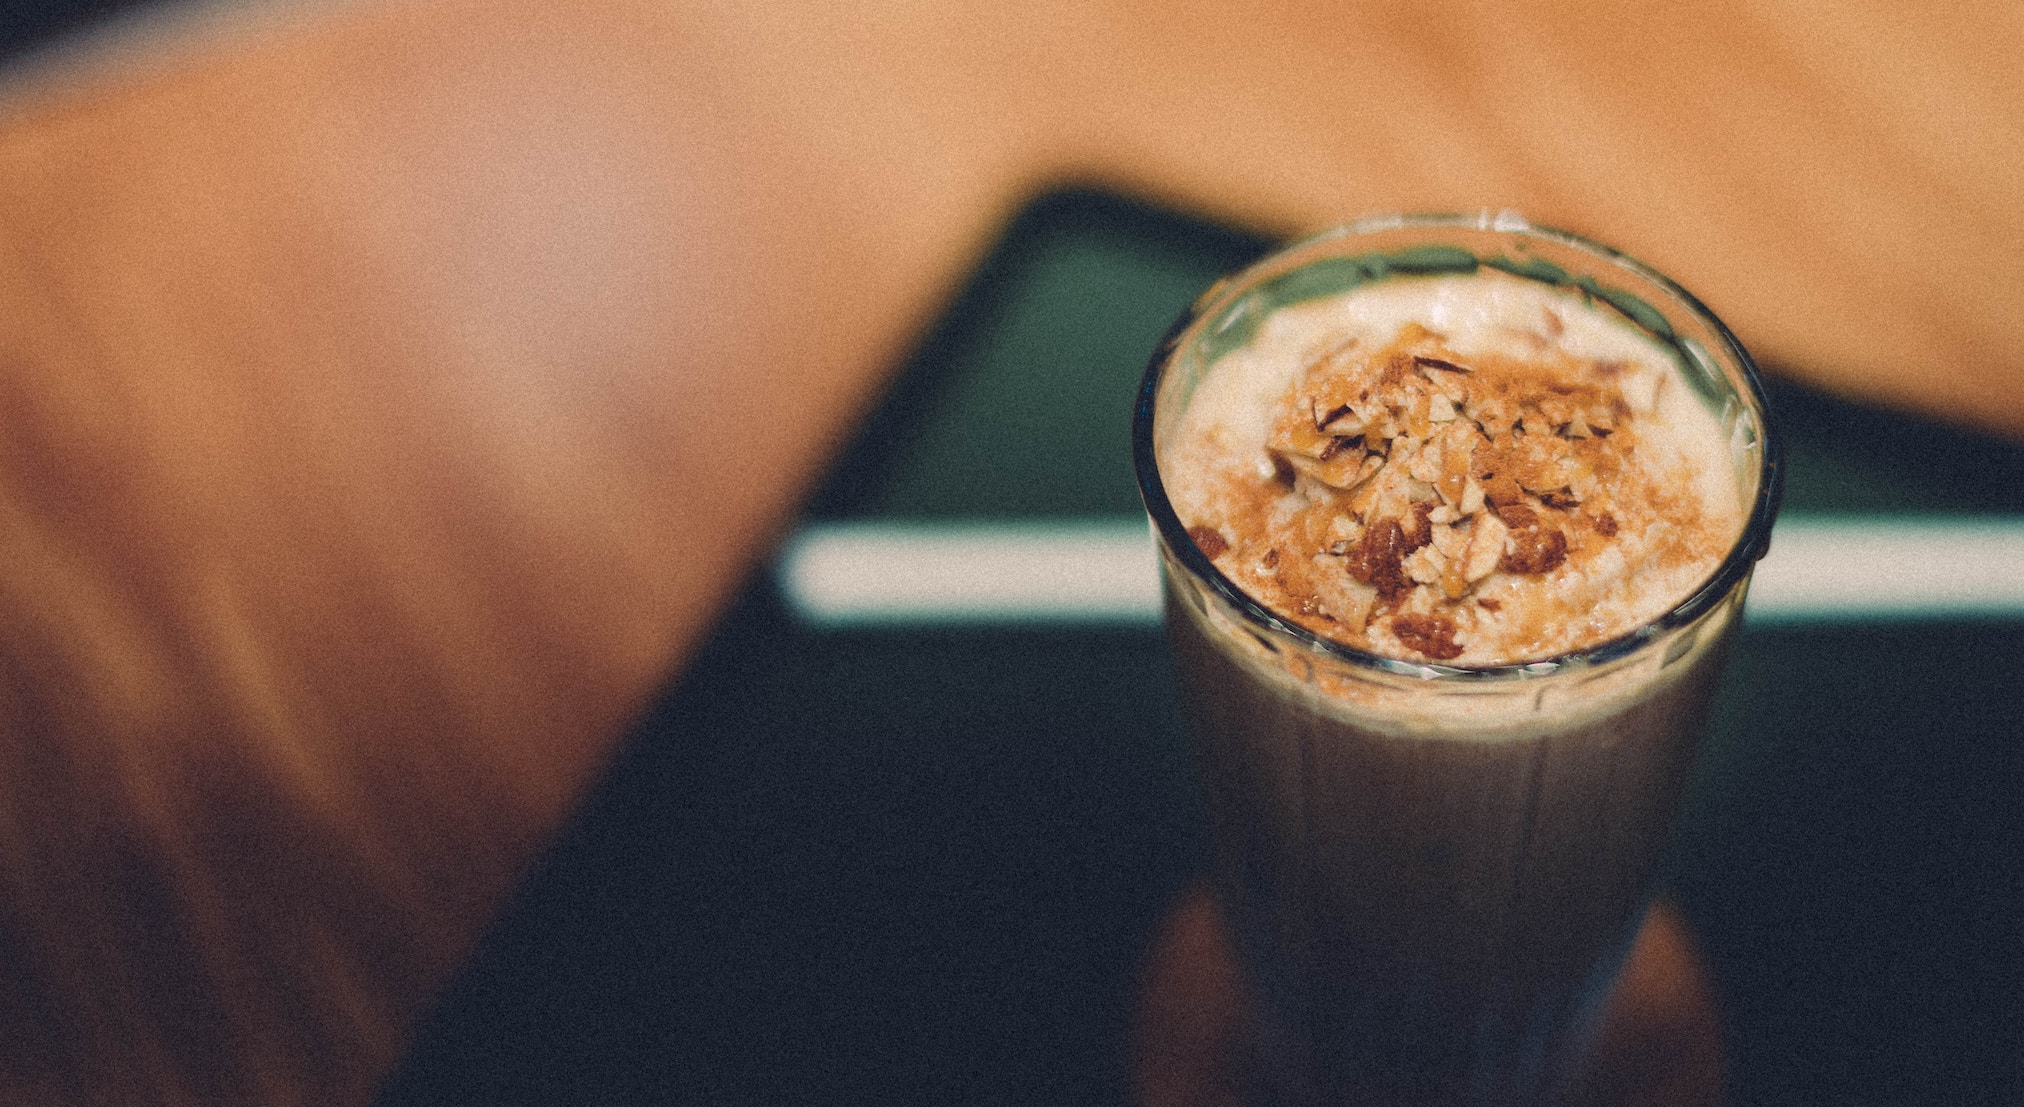 Pumpkin spice latte, un gran éxito comercial en la estrategia de asociar productos con estaciones